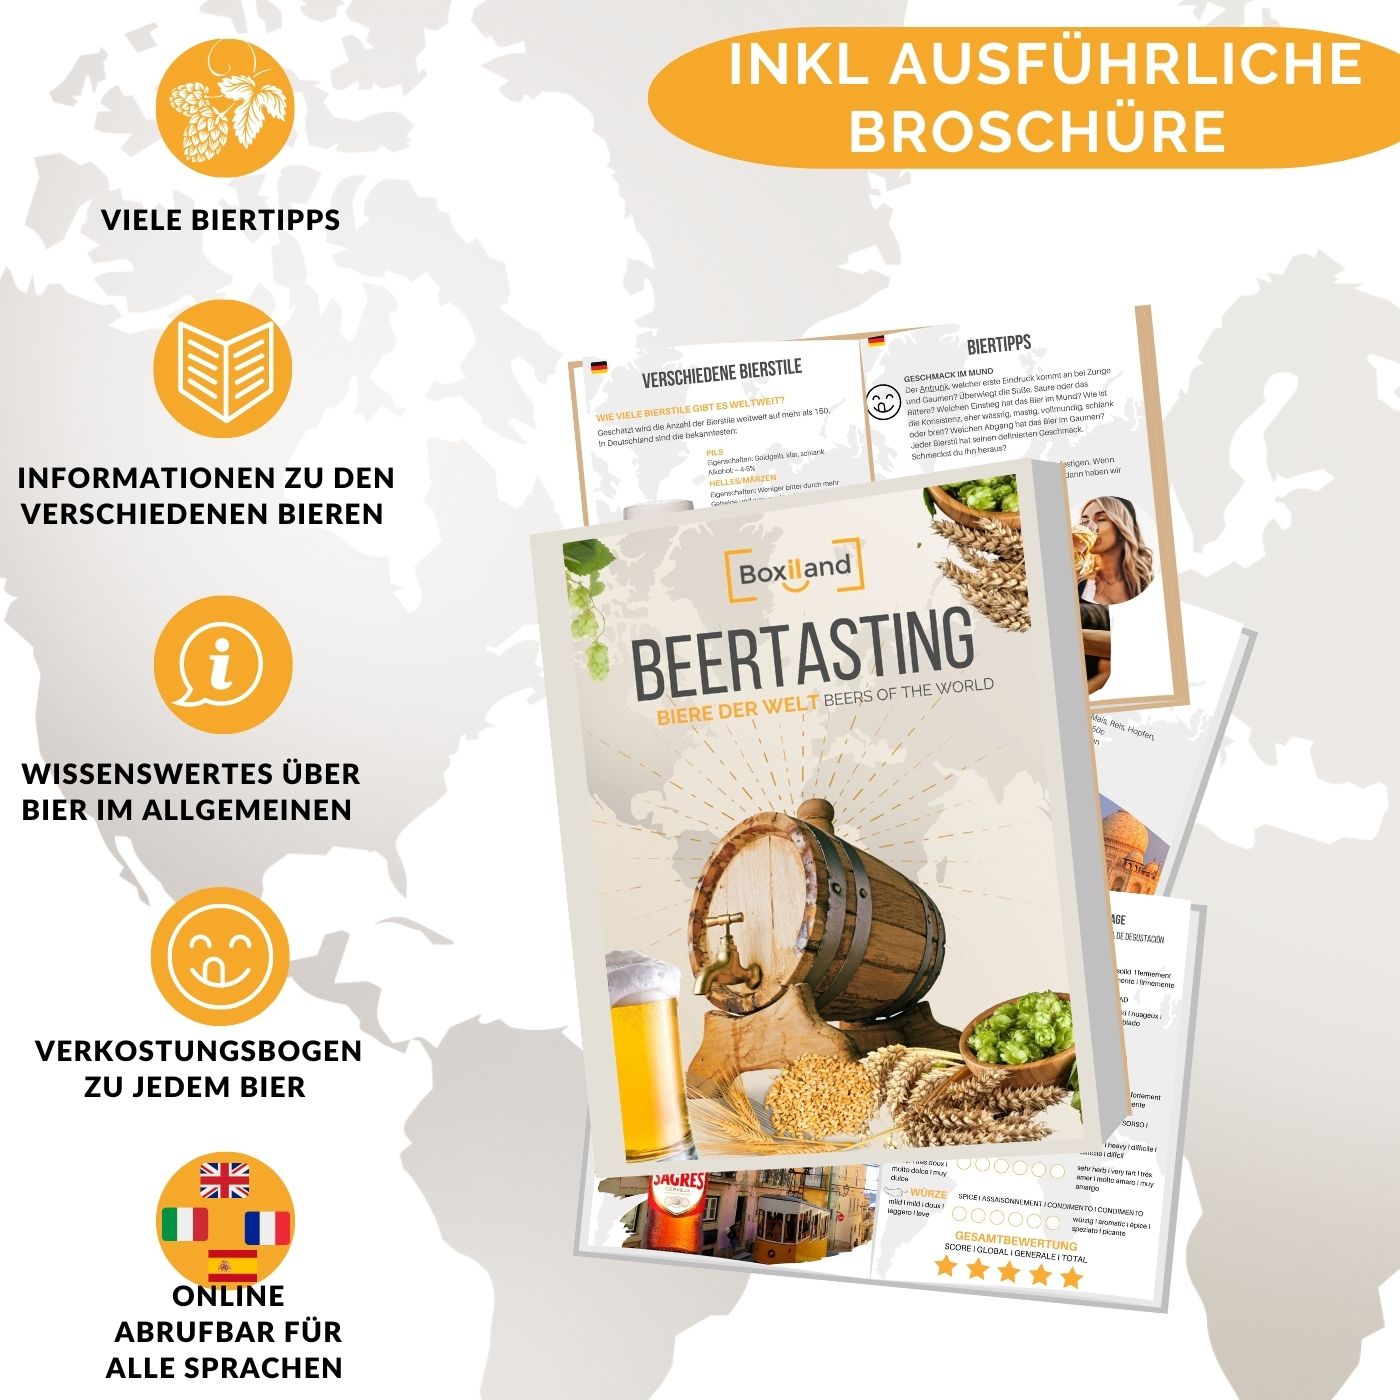 Biere der Welt (12 Flaschen) internationale Bier Spezialitäten zum Verschenken - Beste Biere der Welt mit Geschenkkarton (Bier + Tasting-Anleitung + Bierbroschüre + Brauereigeschenke + Geschenkkarton)